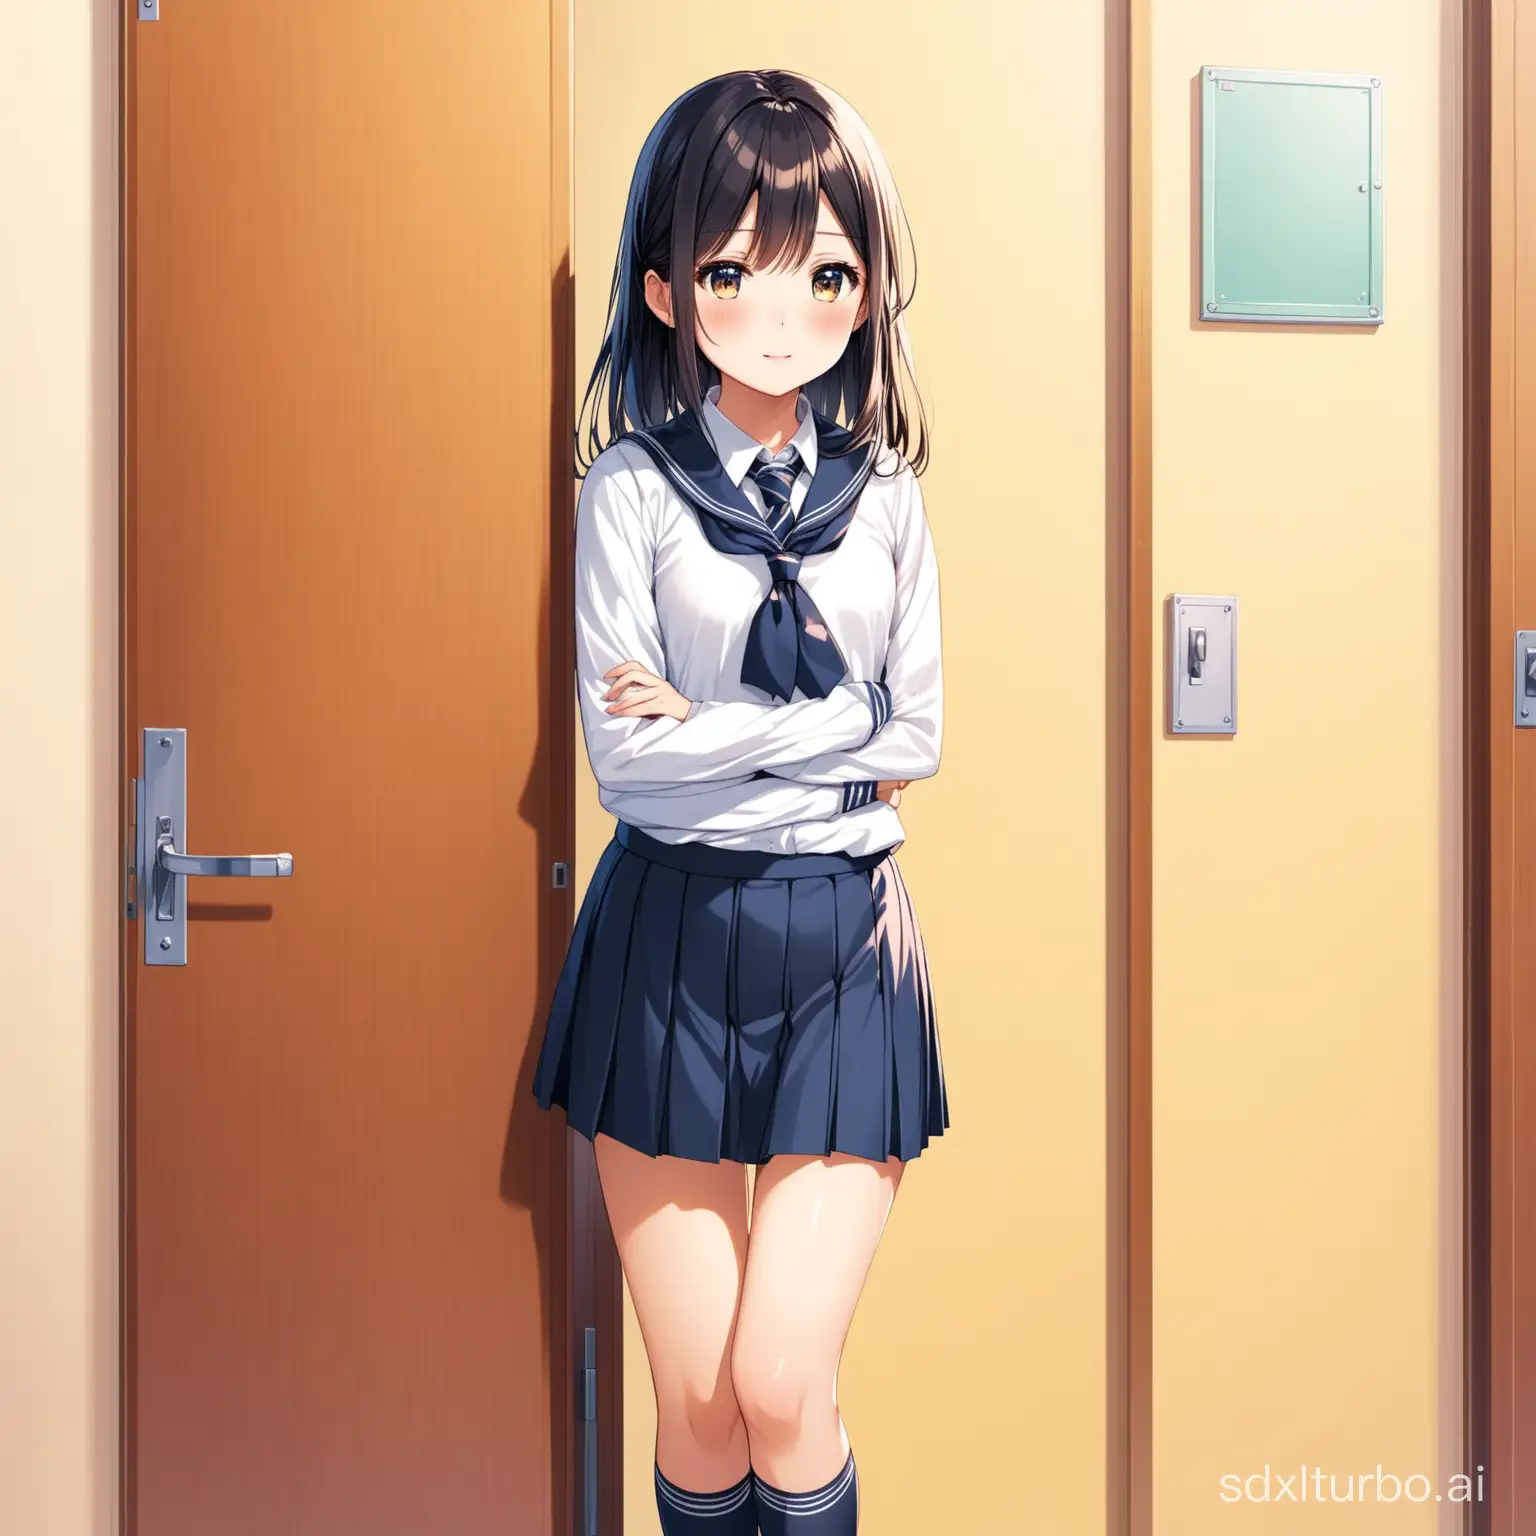 Charming-Schoolgirl-Daydreaming-by-Classroom-Door